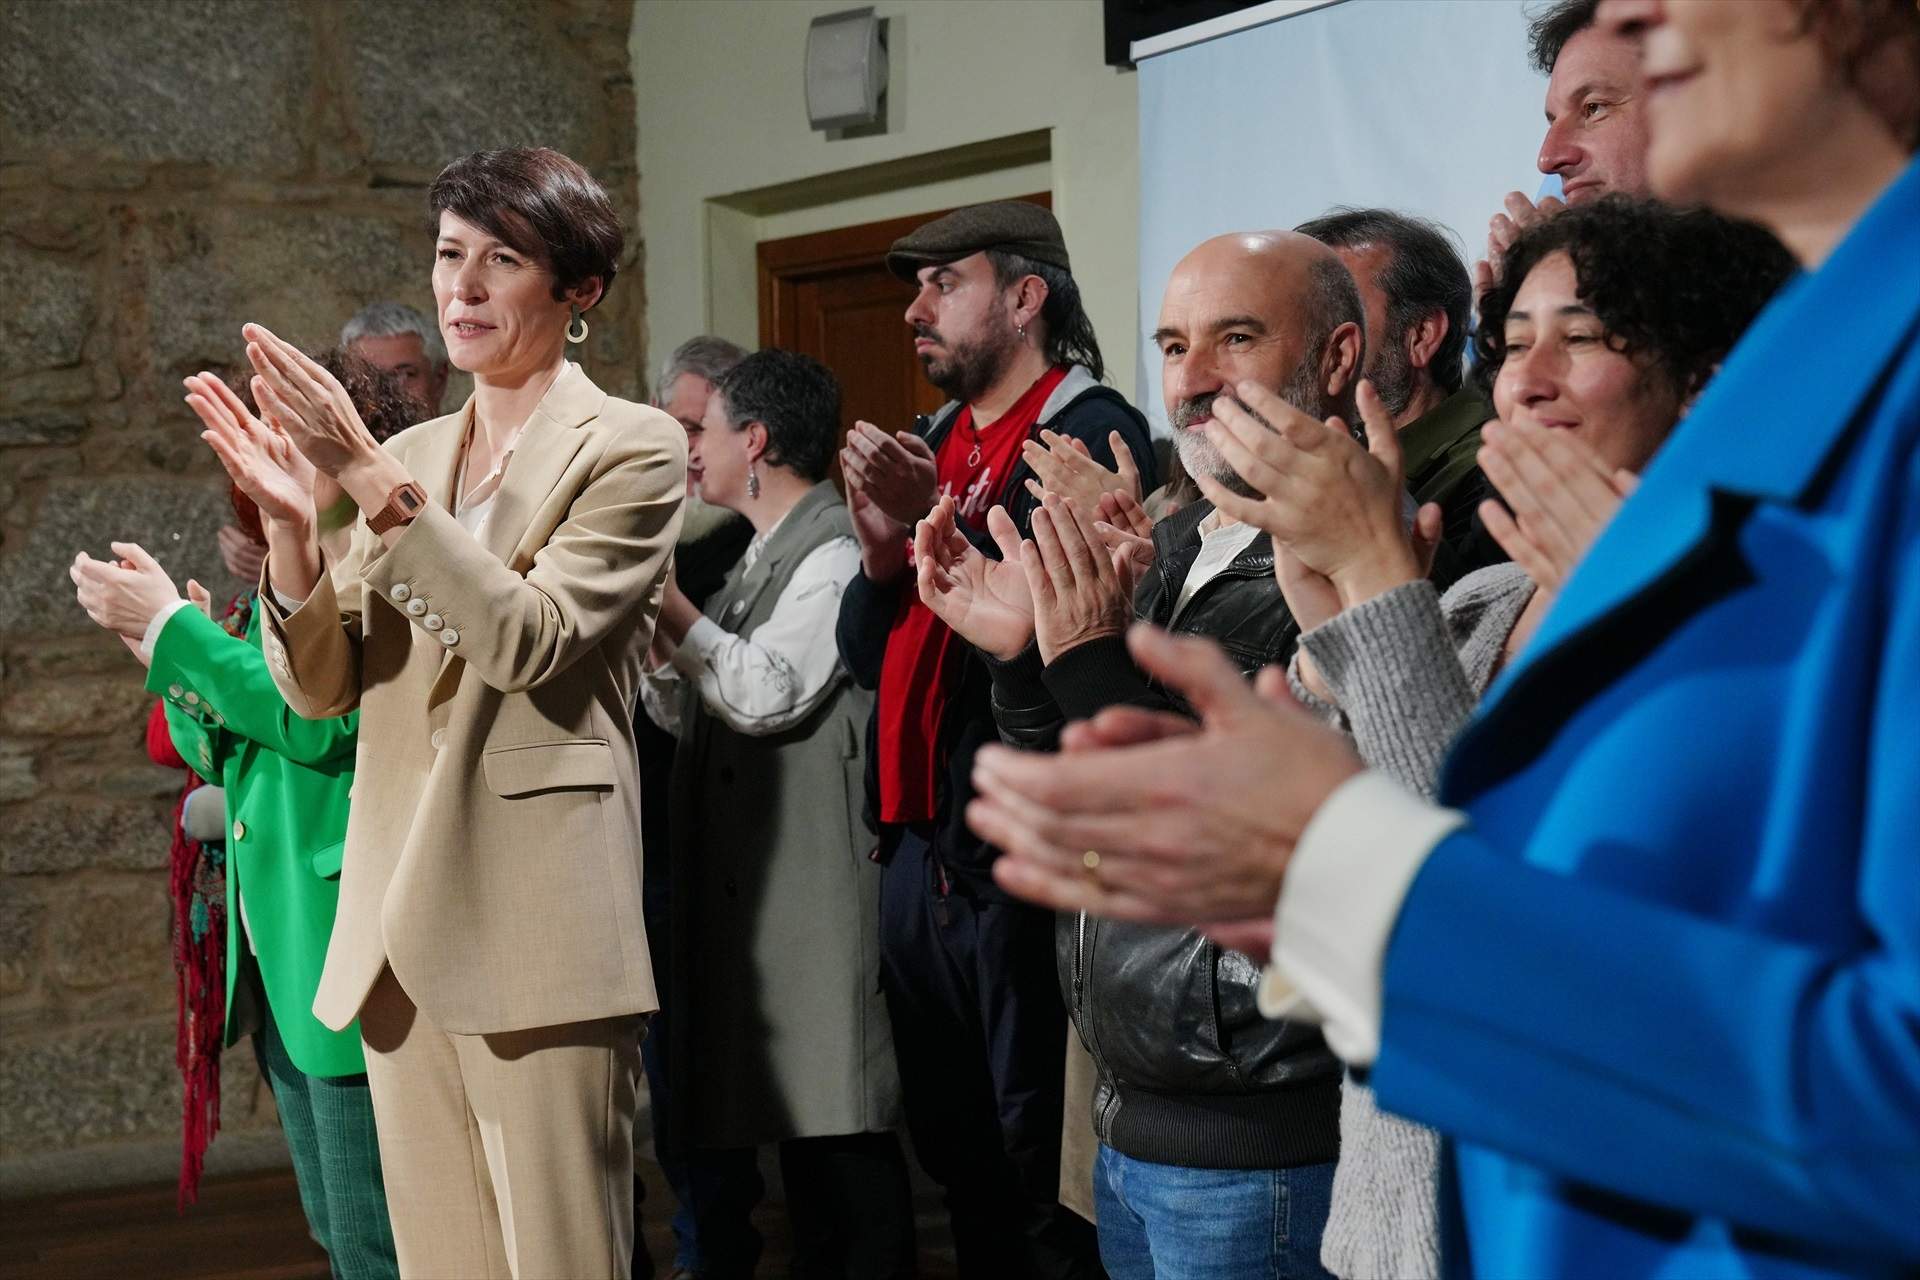 El BNG se erige en la “alternativa indiscutible” al PP y da por empezado “un nuevo ciclo” en Galicia